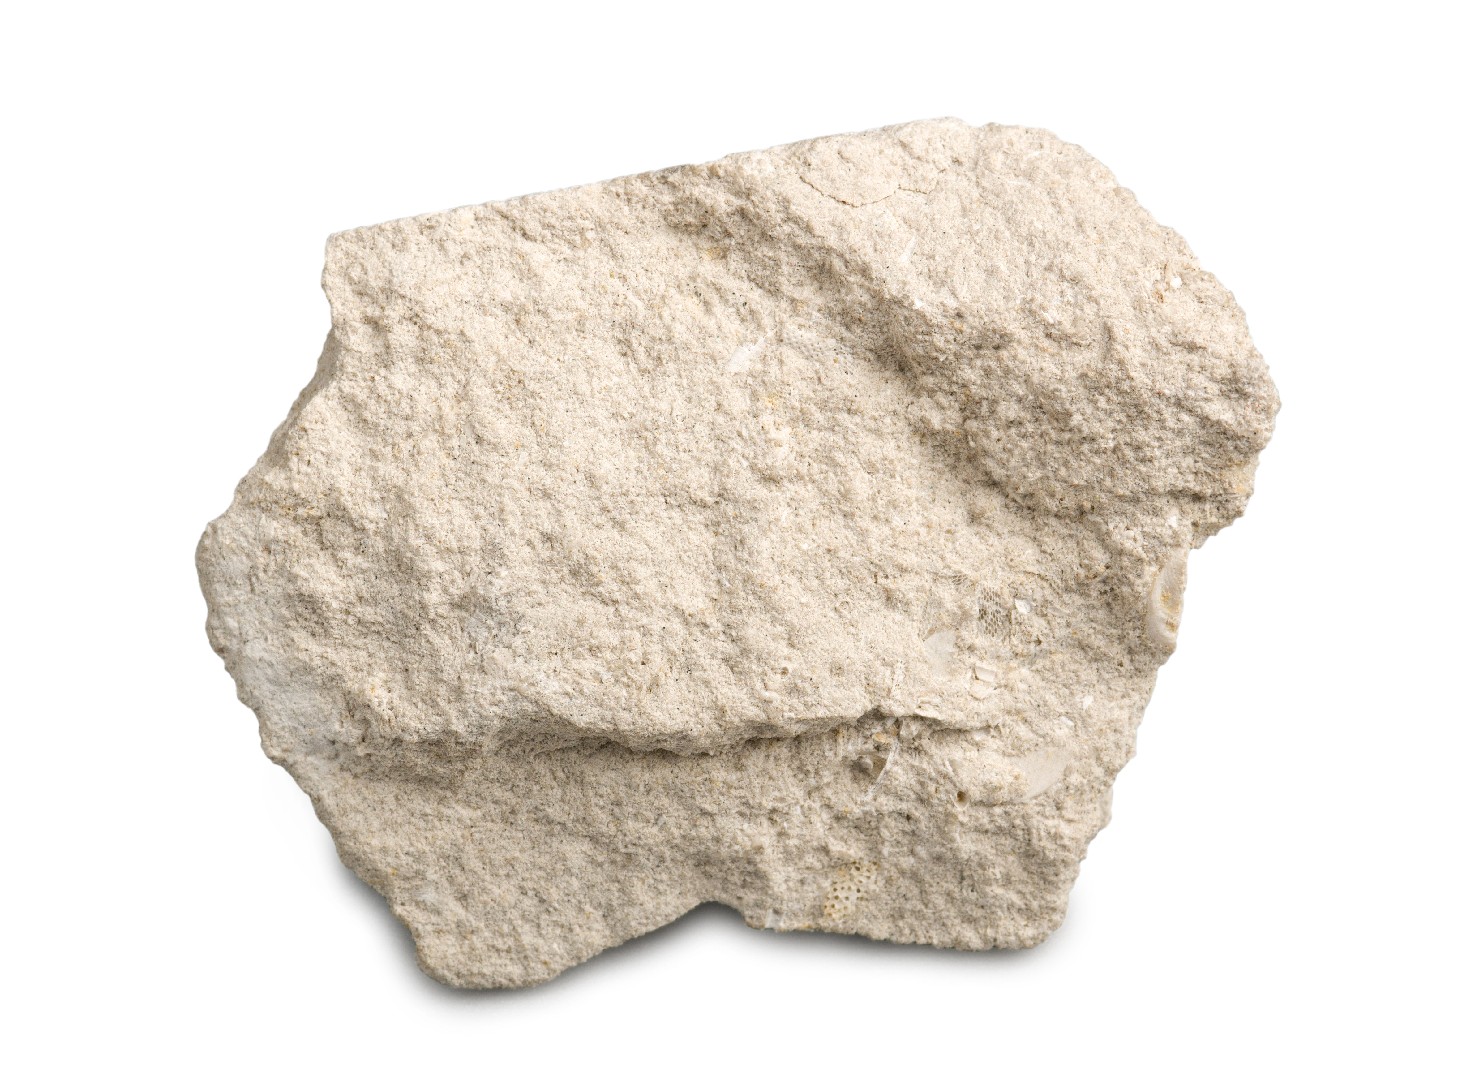 Calcaire (Limestone)